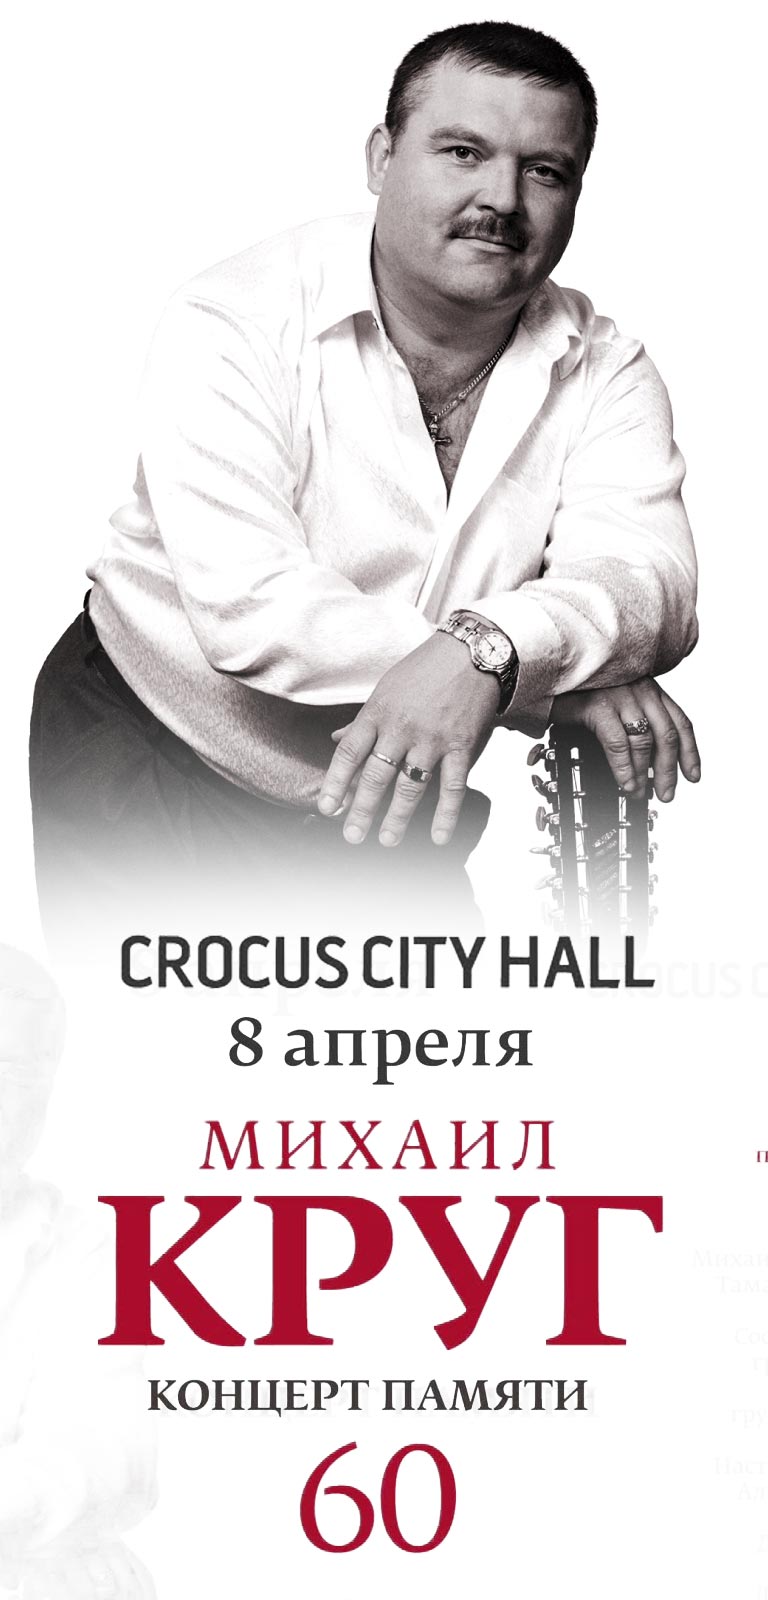 Купить Билеты на концерт памяти Михаила Круга 8 апреля 2022 в Крокус Сити Холл